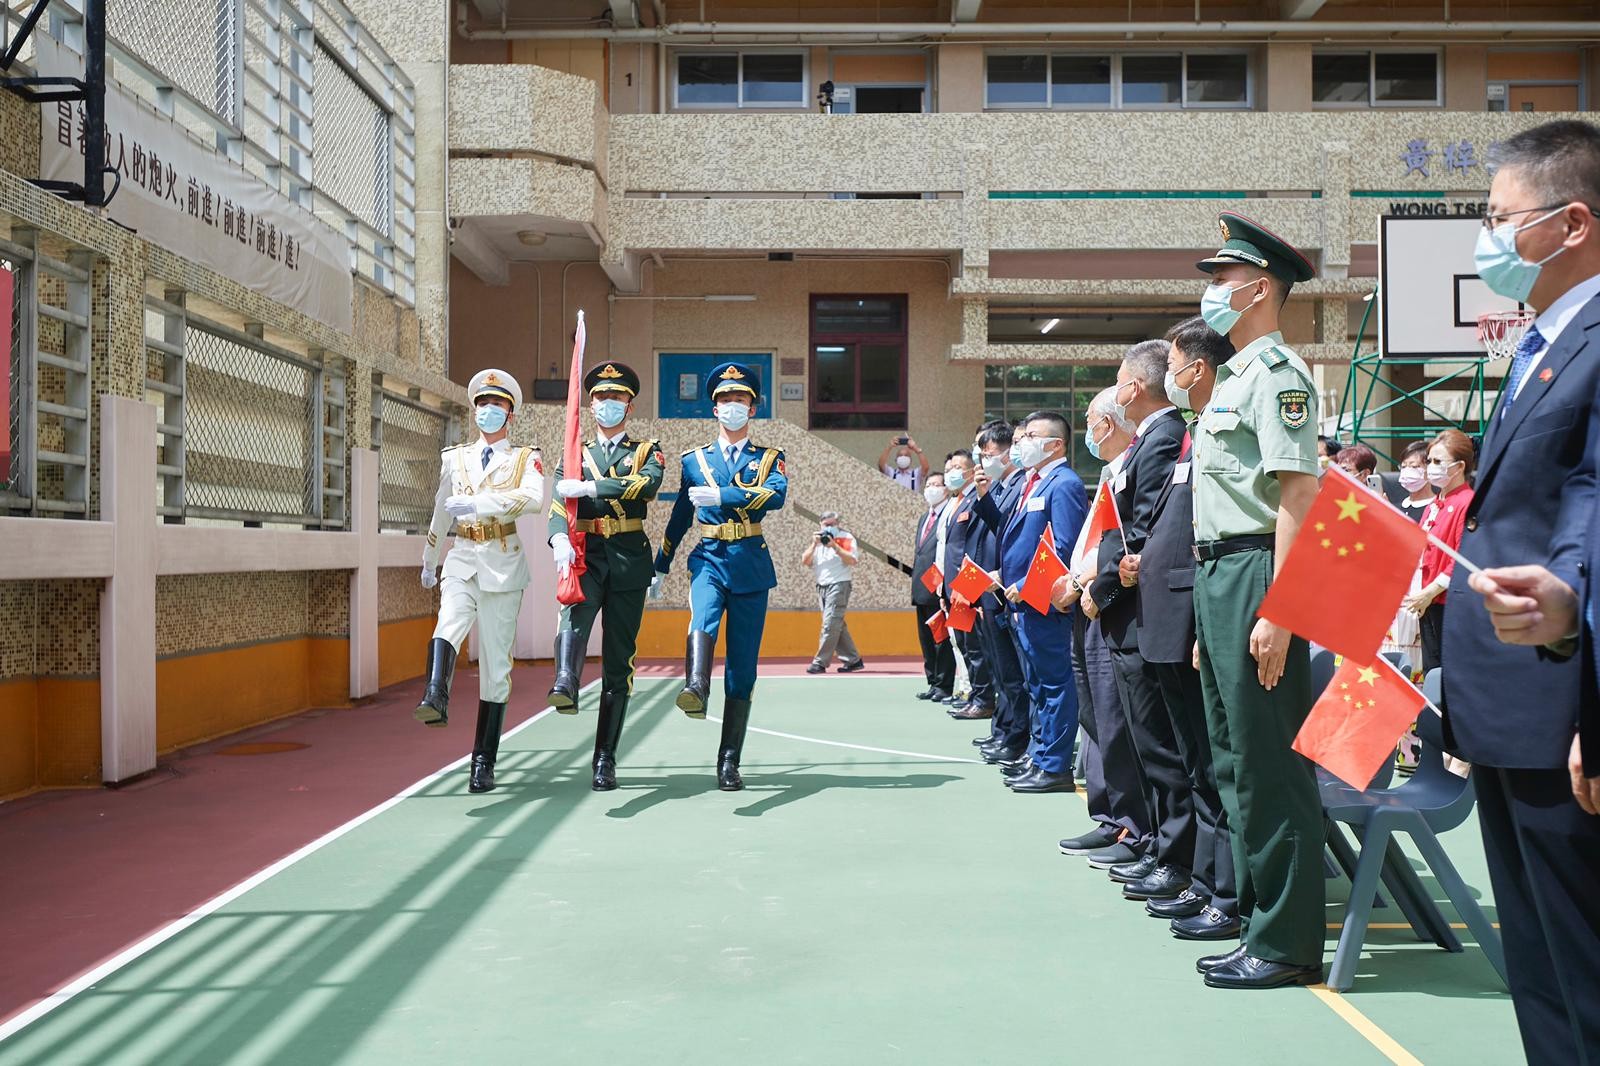 常務副理事長郭二澈出席在北角培僑中學舉辦「中國人民解放軍駐香港部隊儀仗隊升旗儀式」擔任主禮嘉賓 -2